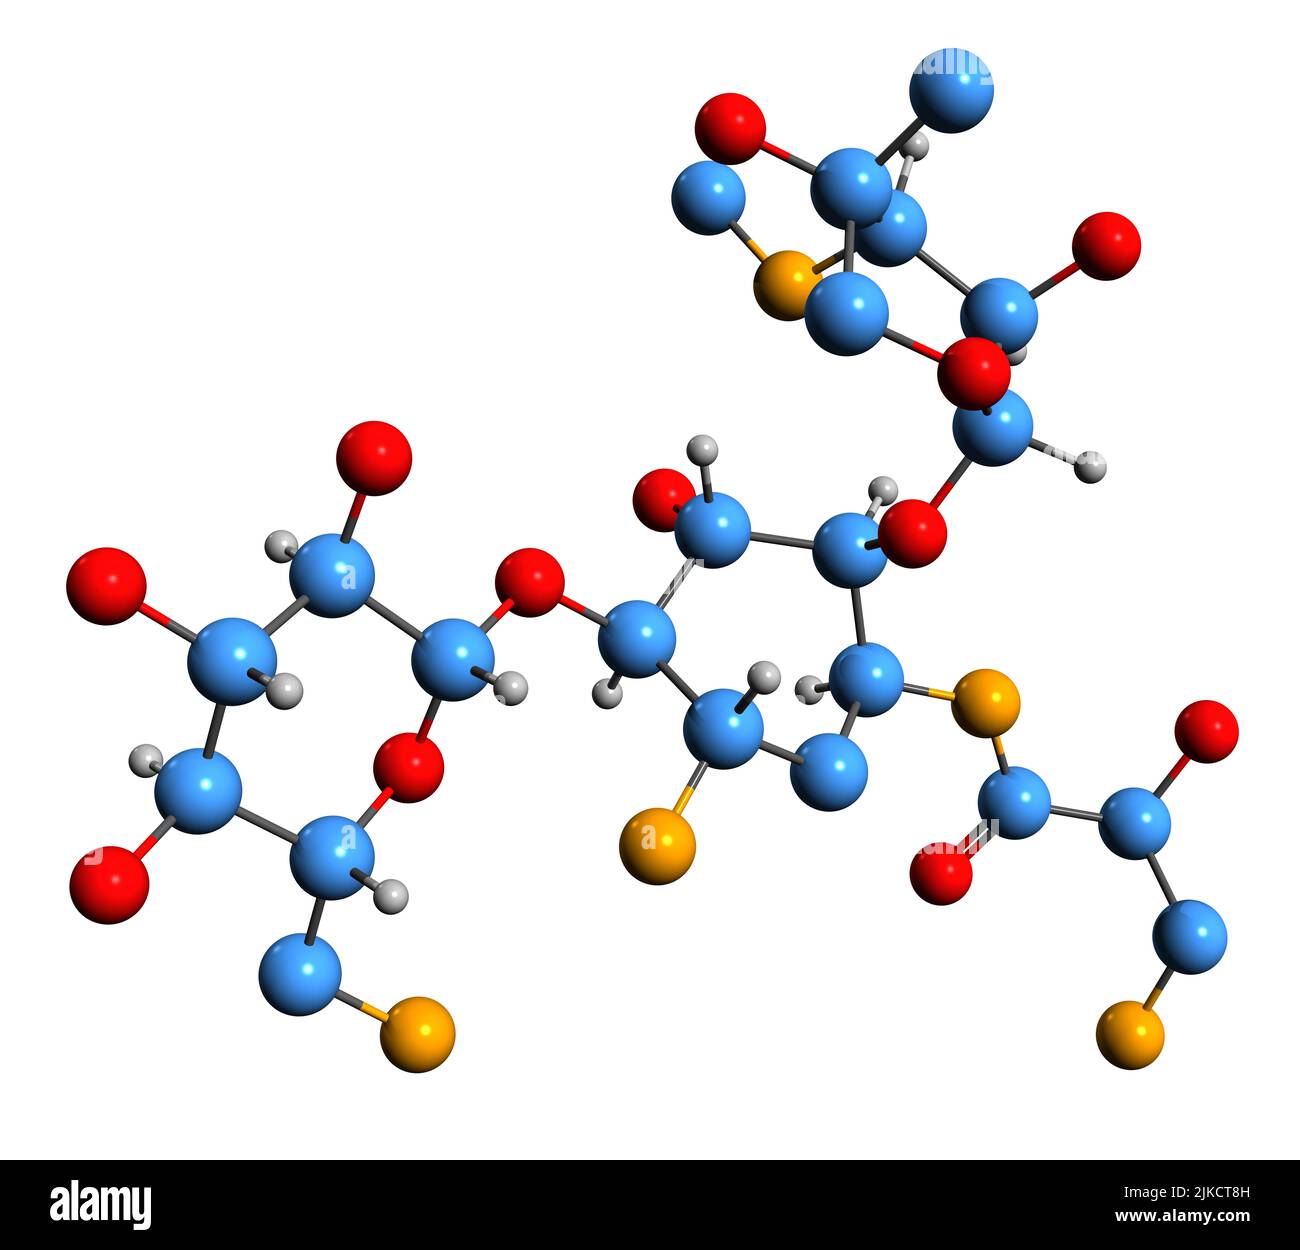 3D Bild der Skelettformel von Isepamicin - molekulare chemische Struktur des Aminoglykosid-Antibiotikums, isoliert auf weißem Hintergrund Stockfoto